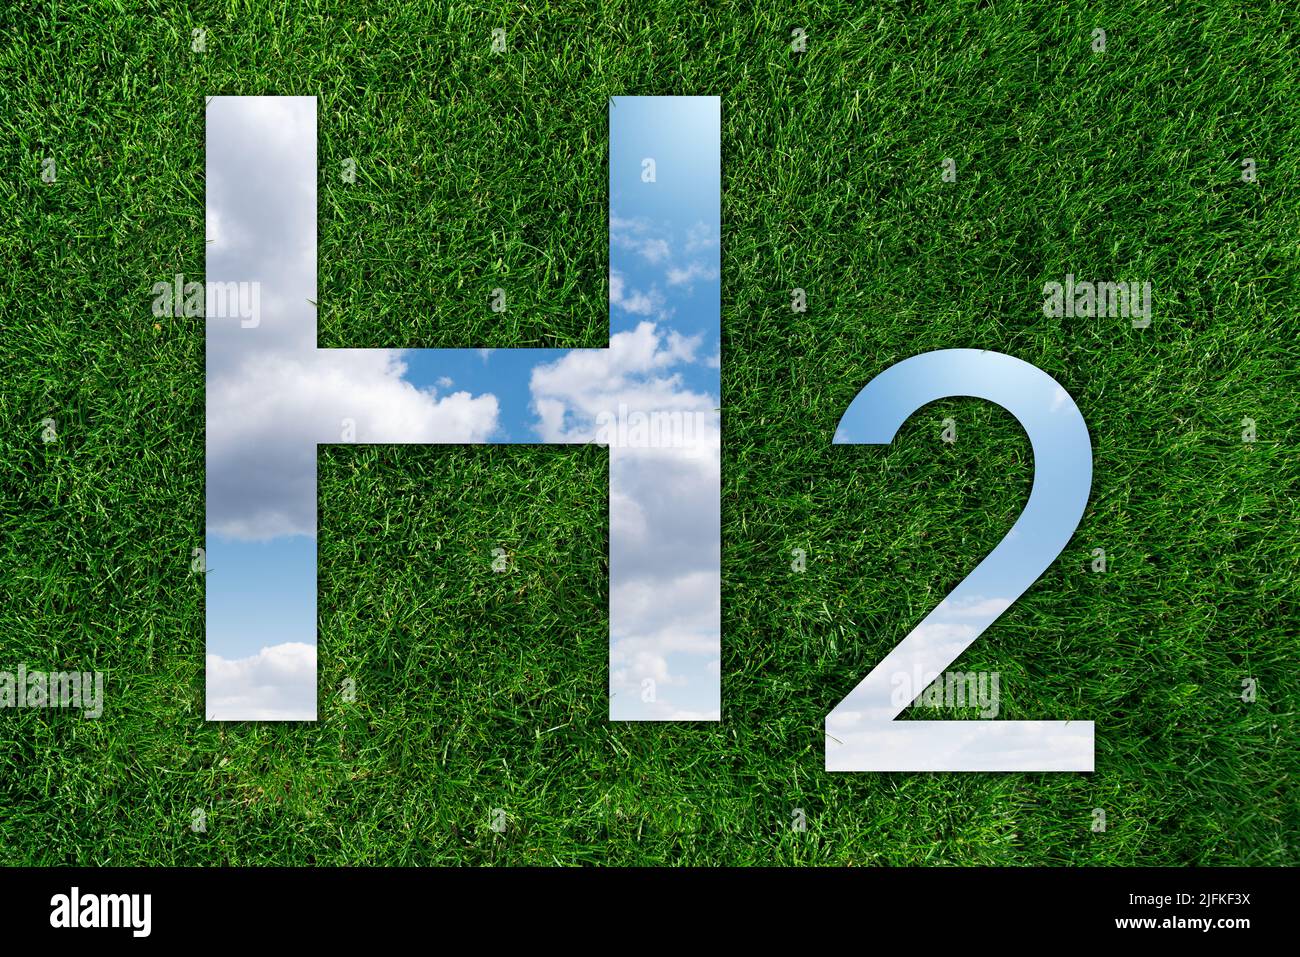 Espejo en forma de fórmula de hidrógeno H2 sobre hierba verde. Reflexión del cielo. Concepto de obtención de hidrógeno verde a partir de fuentes de energía renovables Foto de stock